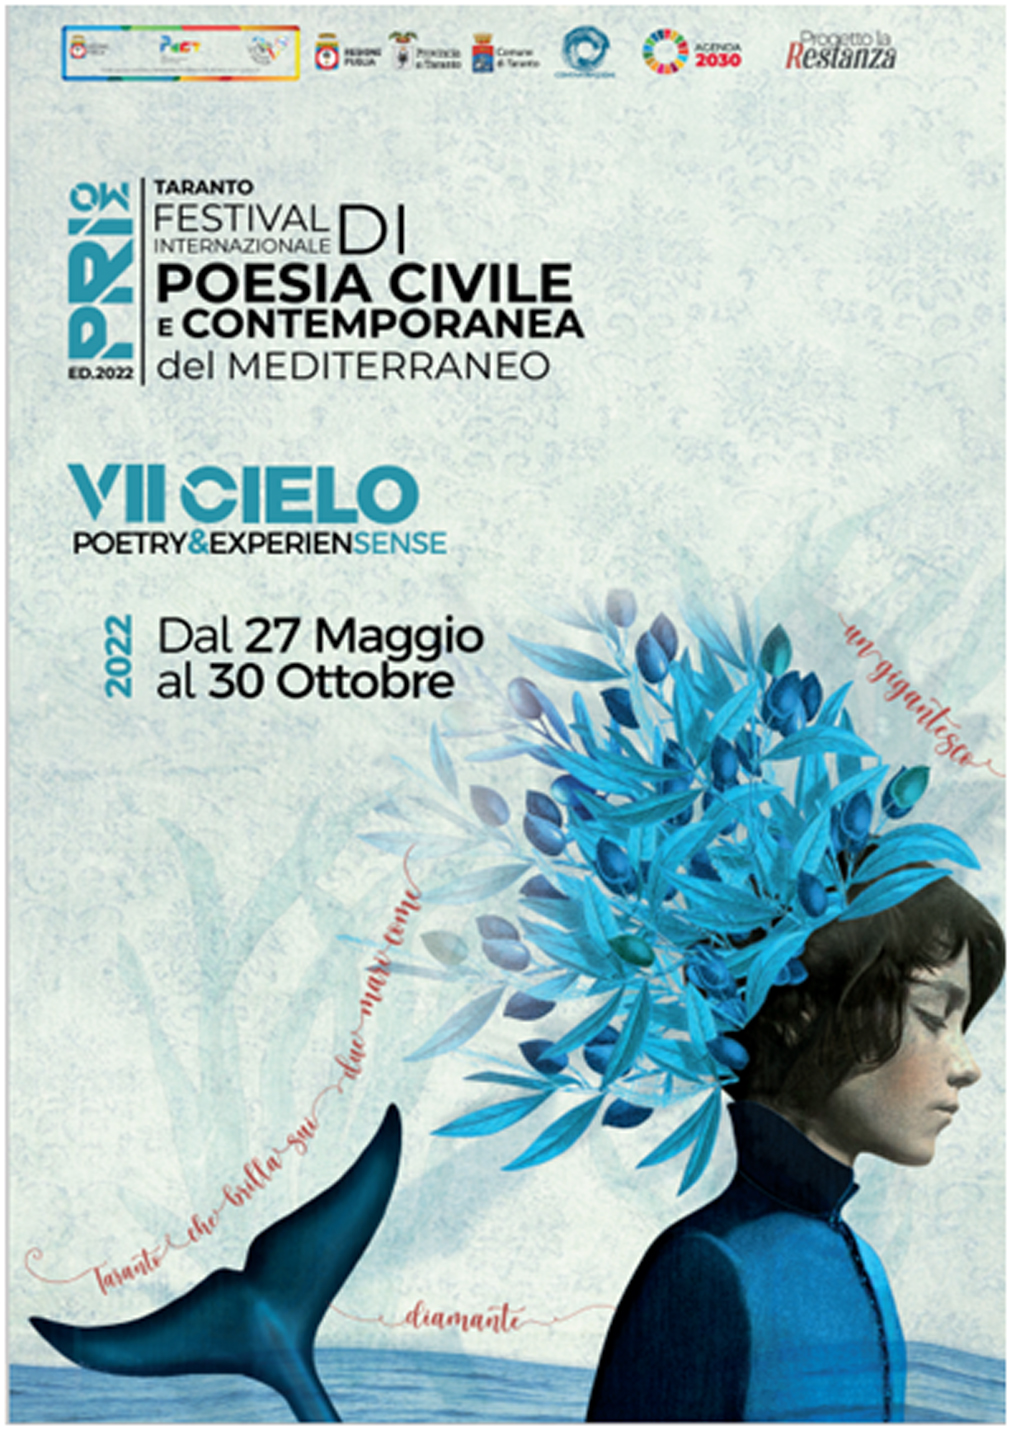 A Taranto il Primo Festival di Poesia Civile e Contemporanea del Mediterraneo